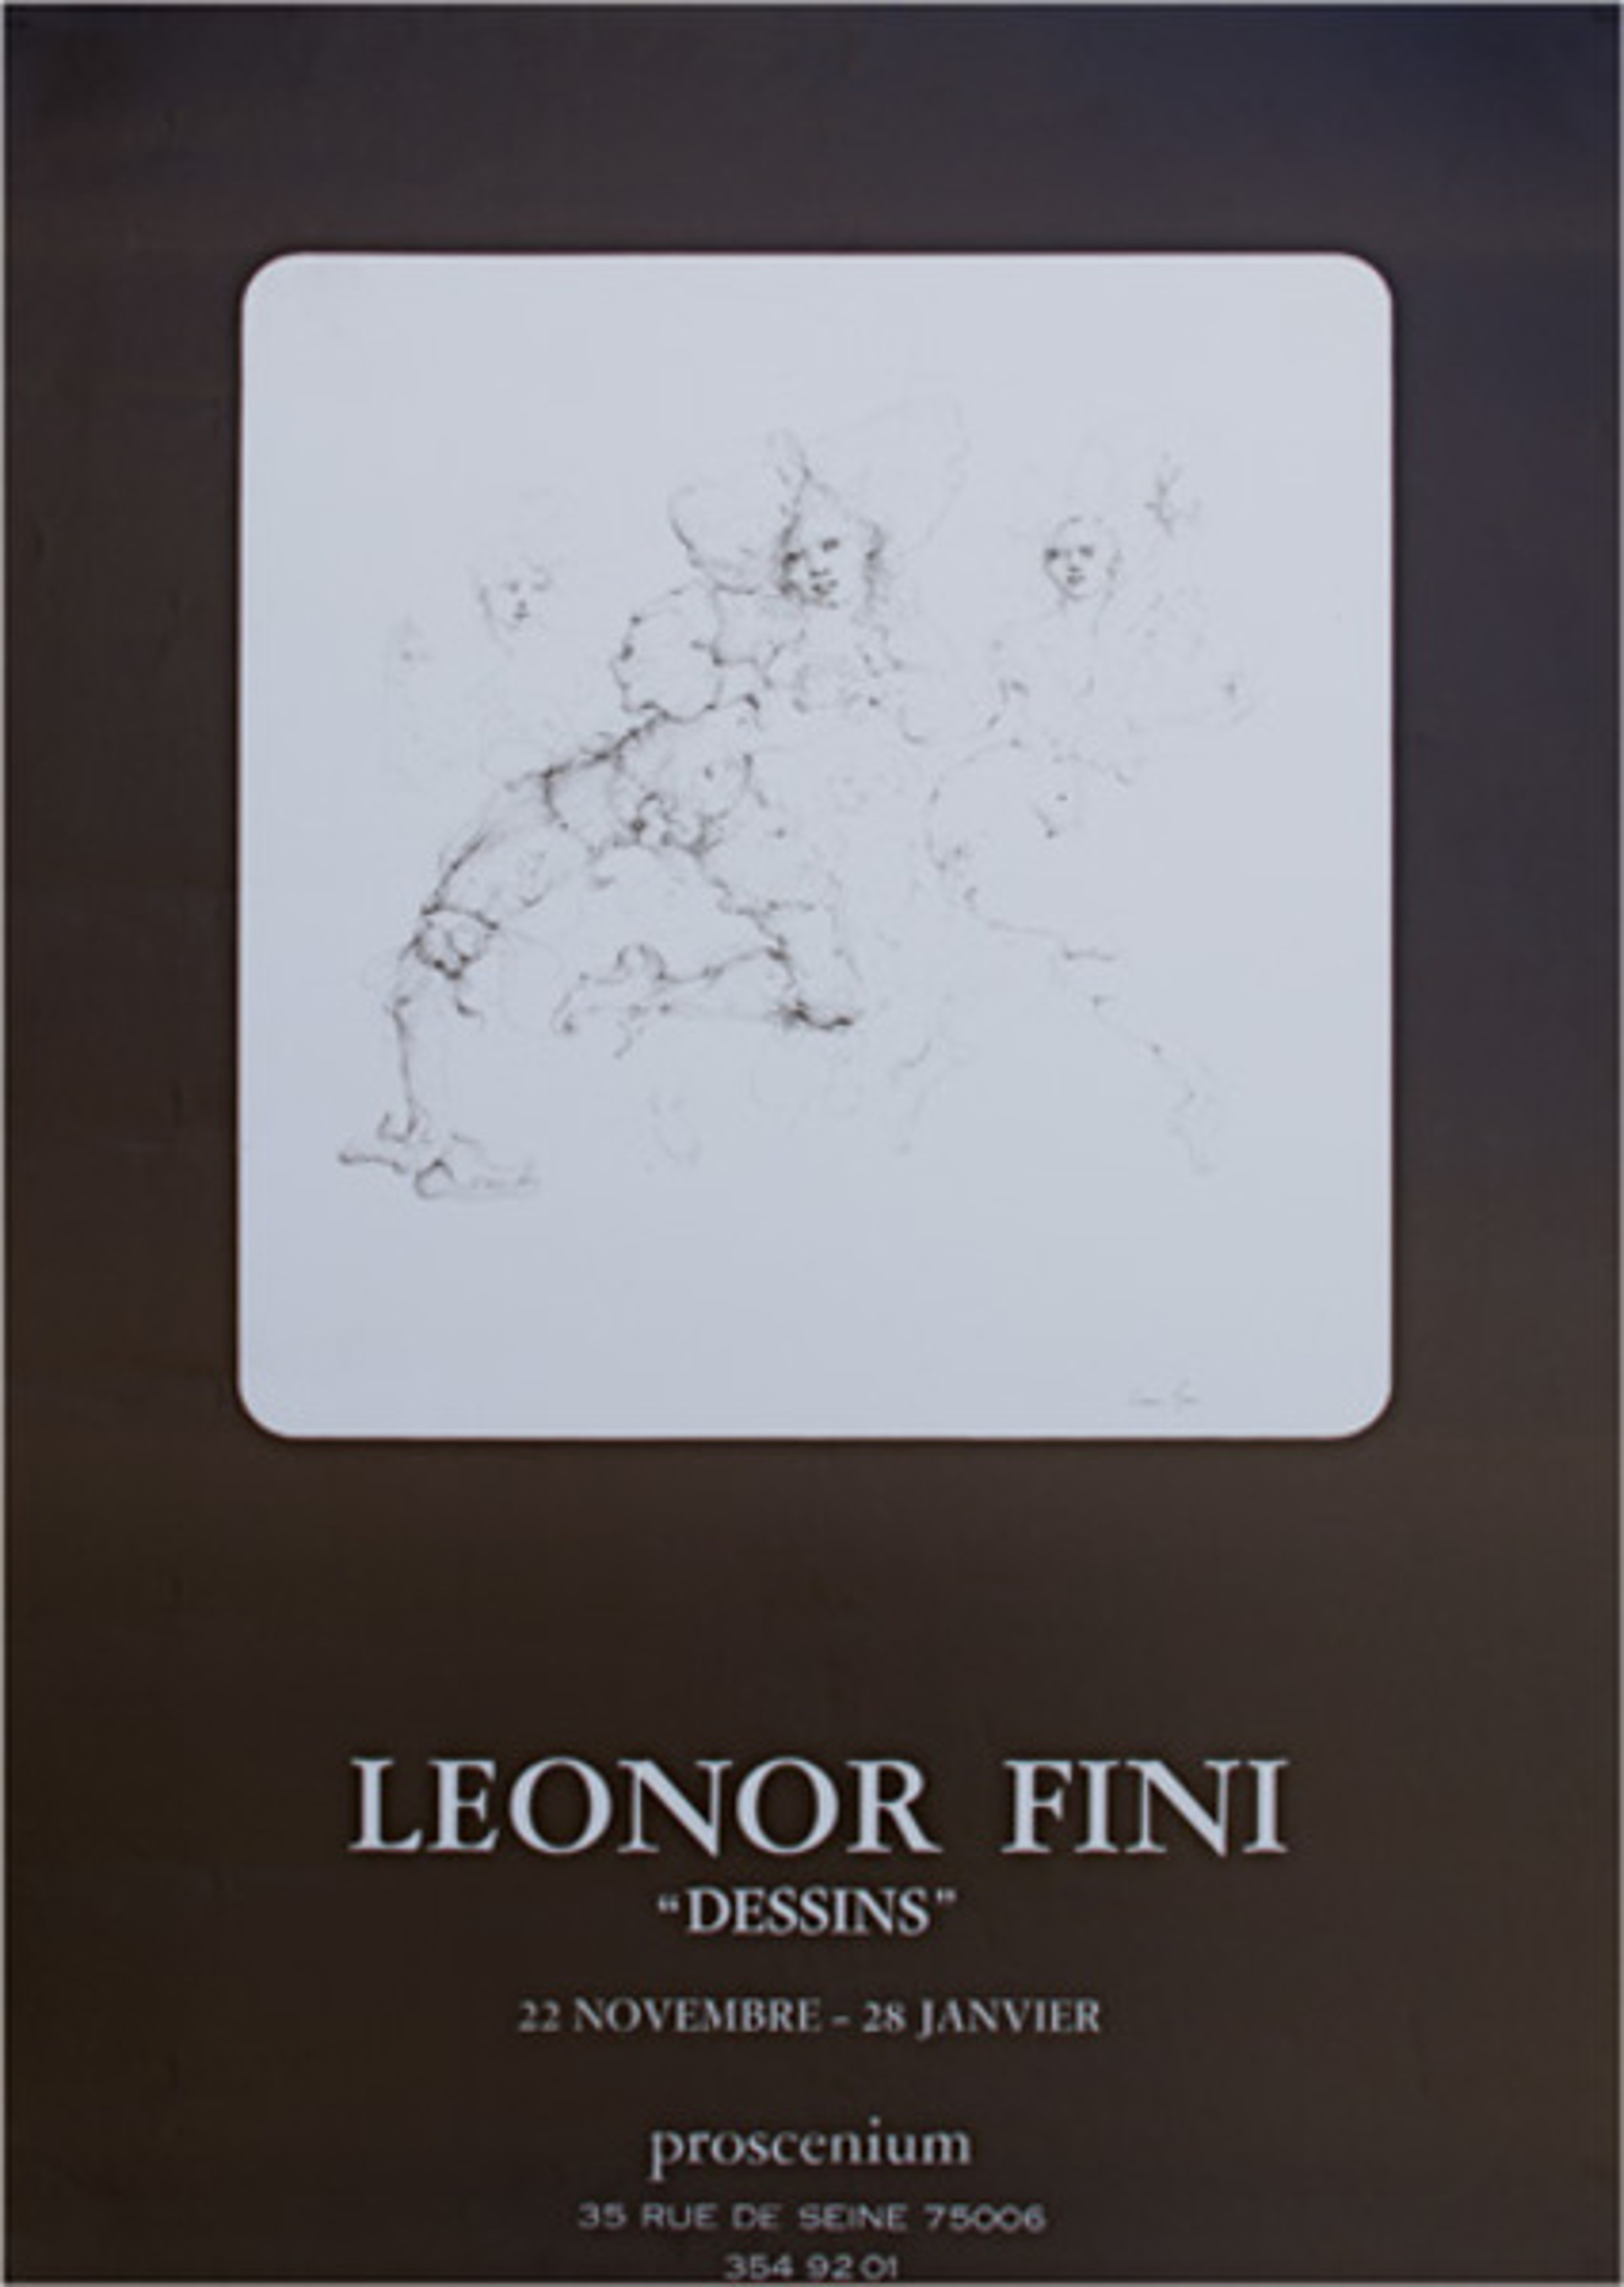 Leonor Fini "Dessins" by Leonor Fini